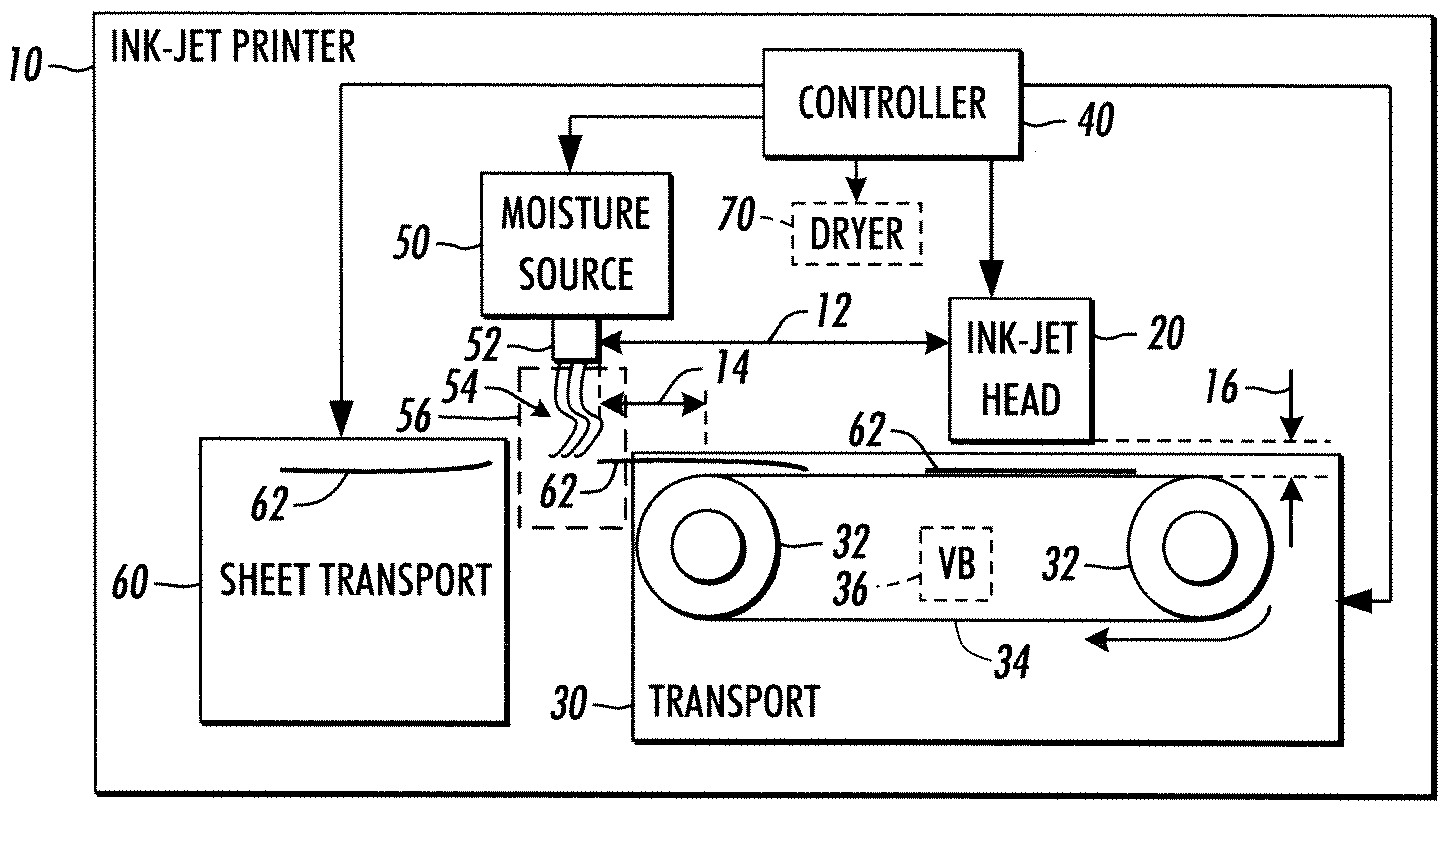 Ink-jet printer and method for decurling cut sheet media prior to ink-jet printing